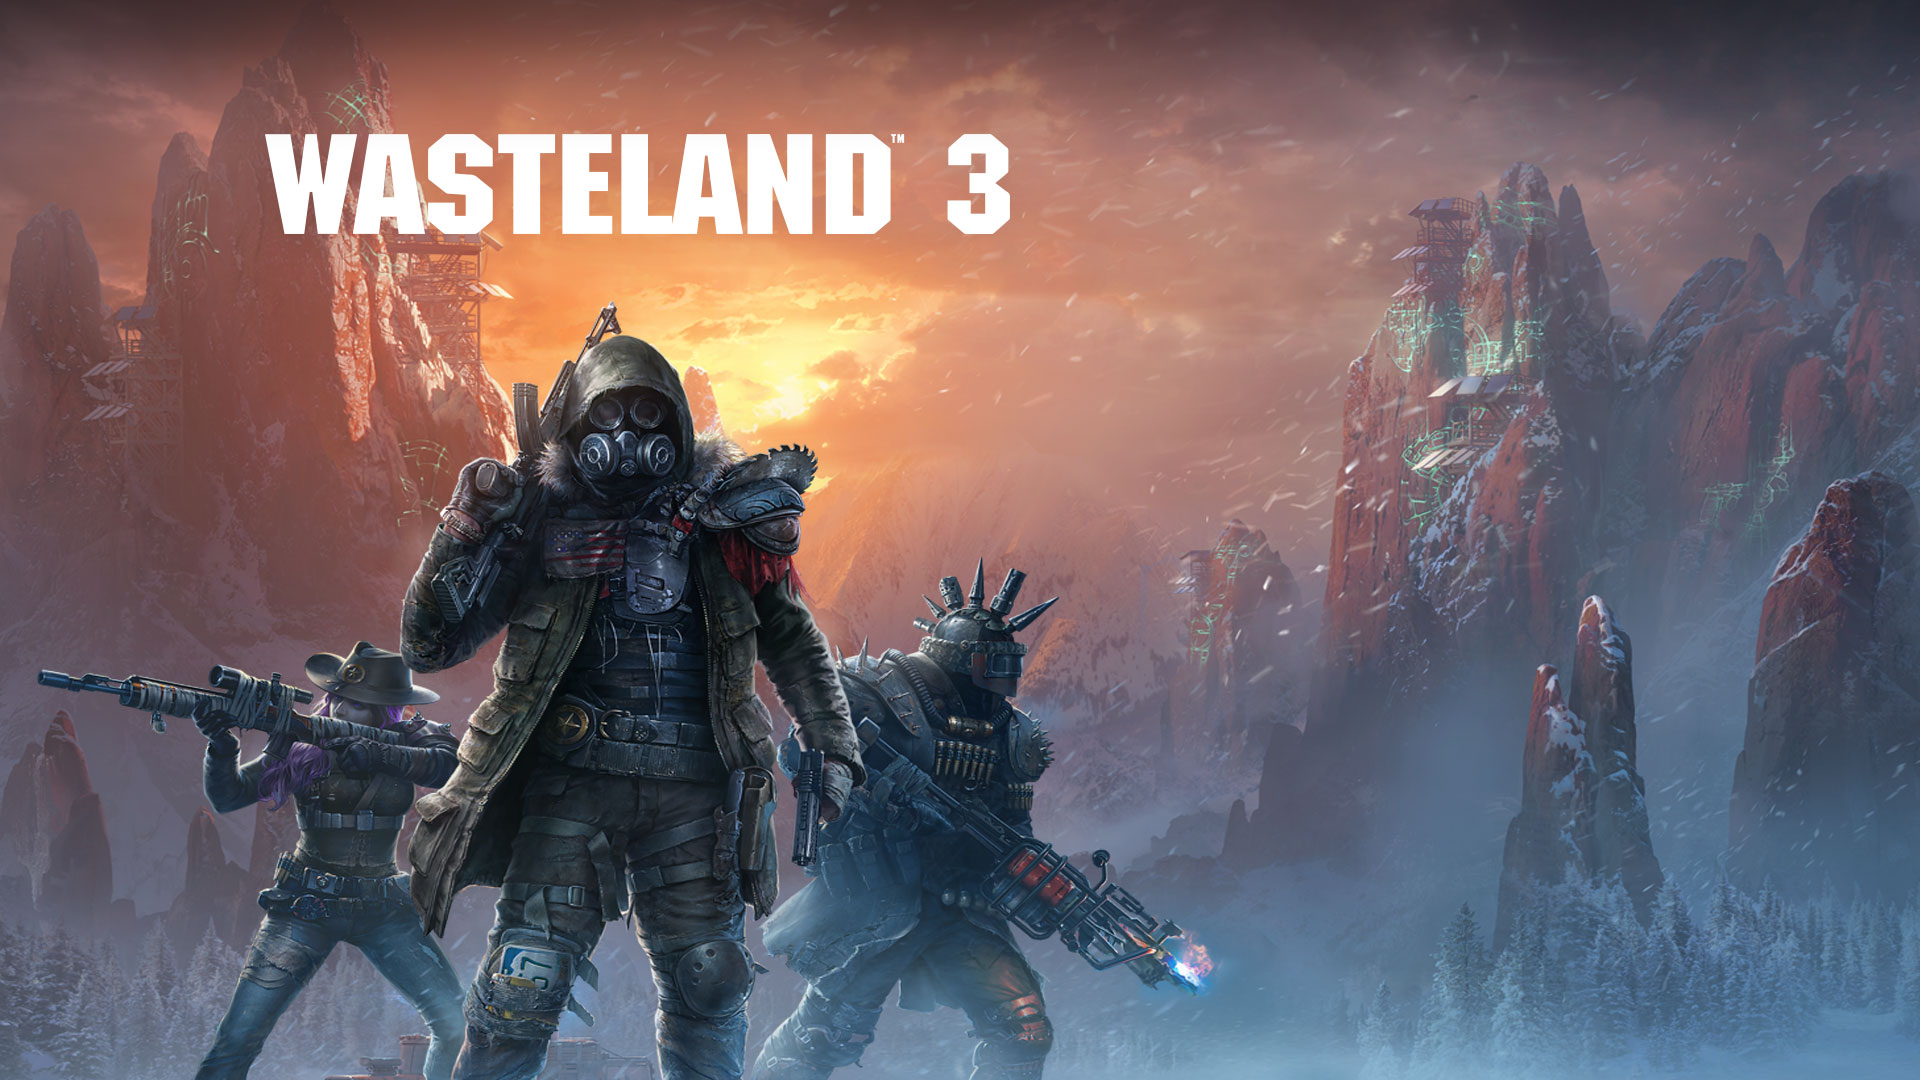 Wasteland 3, 3 těžce ozbrojené postavy ve sněhové bouři s plynovými maskami